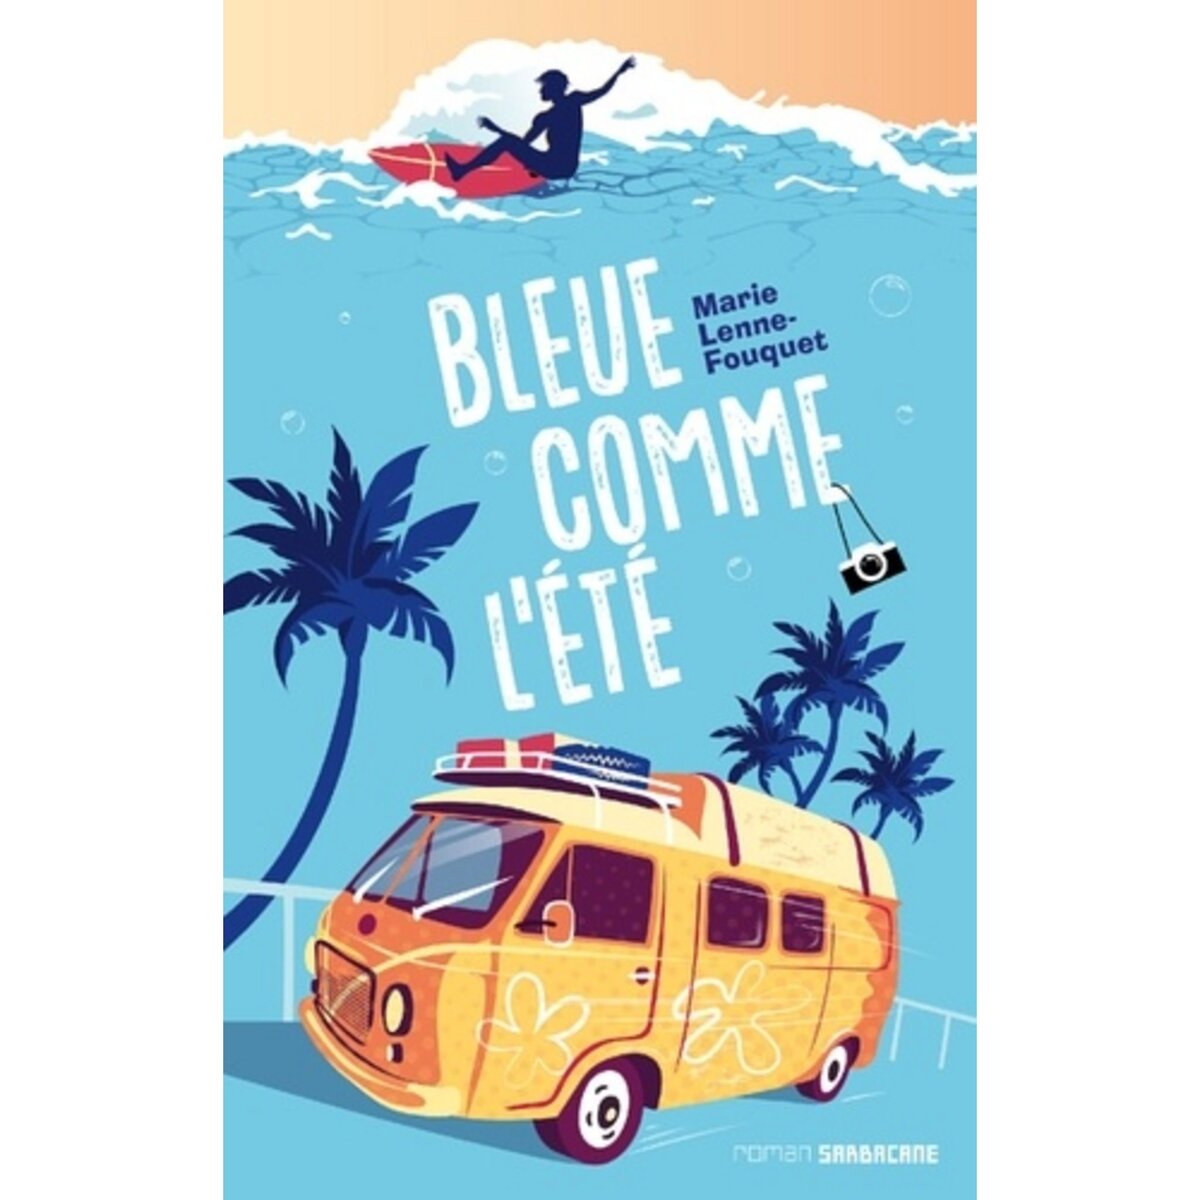  BLEUE COMME L'ETE, Lenne-Fouquet Marie